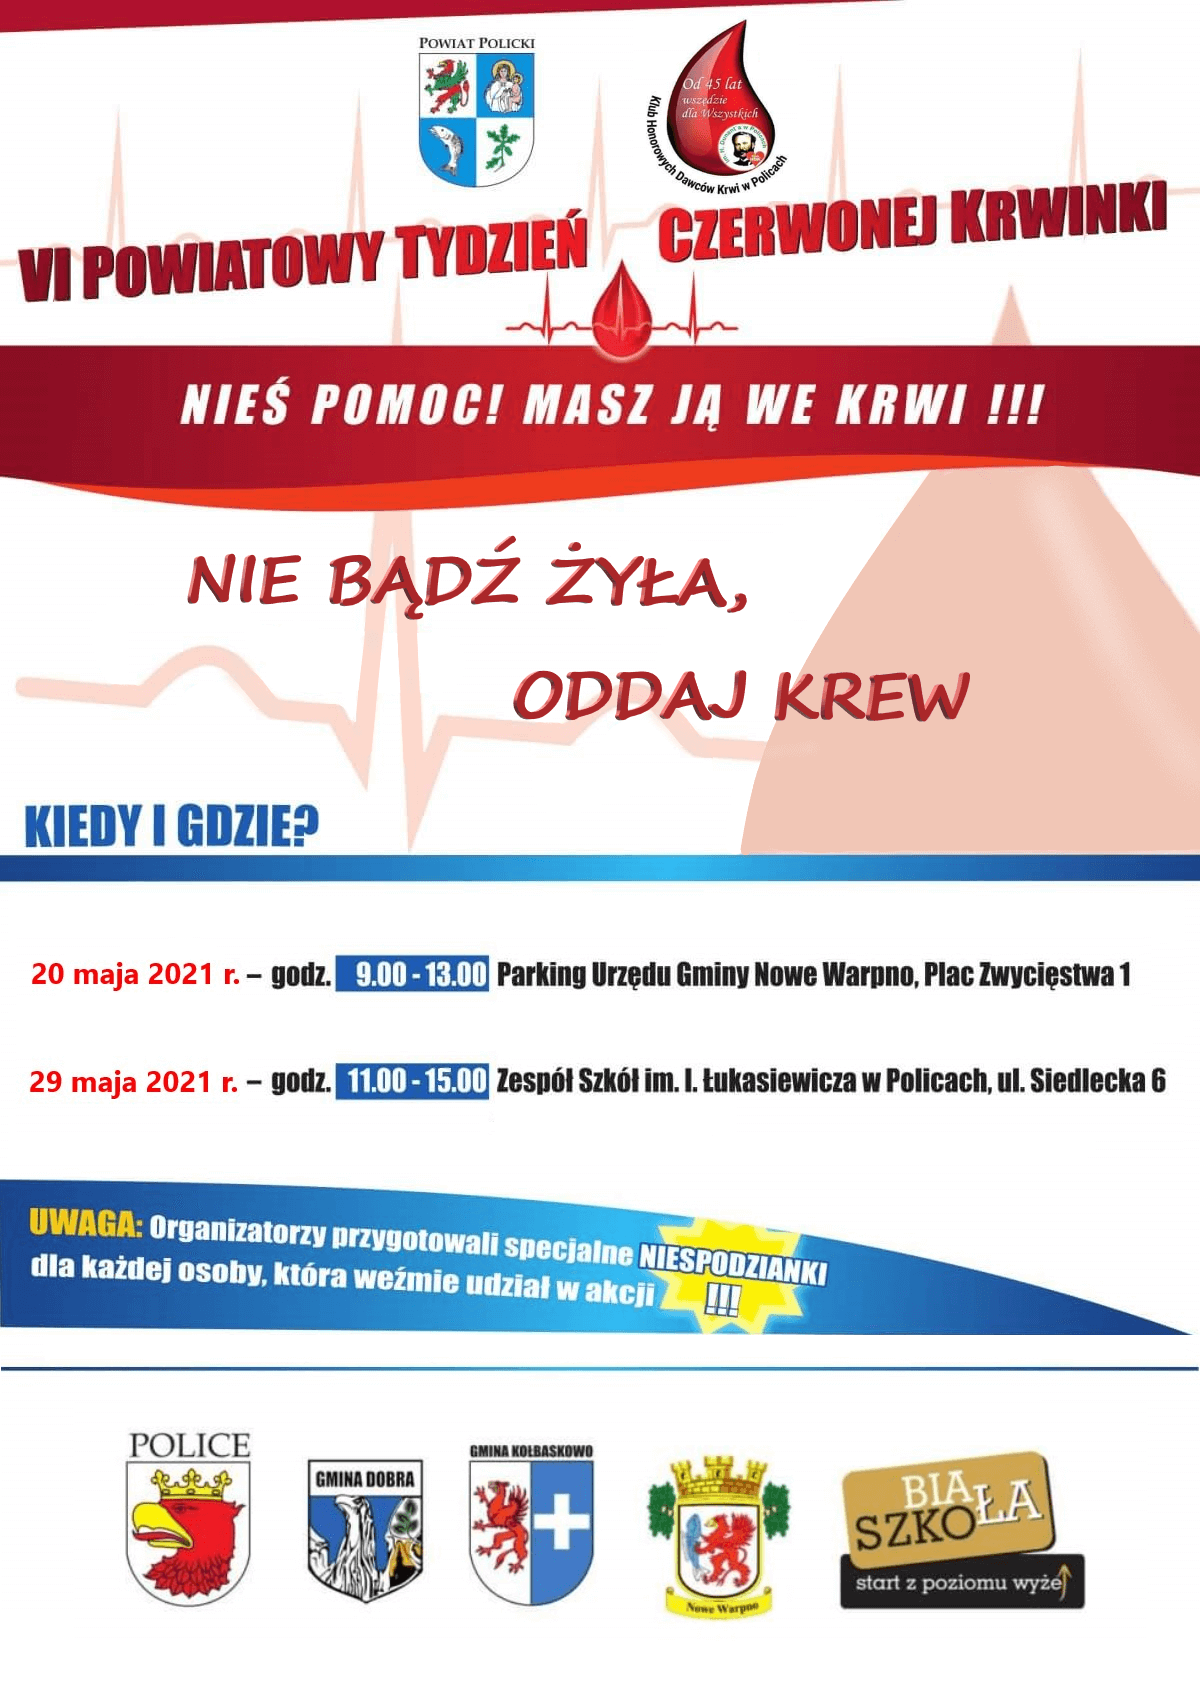 Plakat promujący VI Powiatowy Tydzień Czerwonej Krwinki